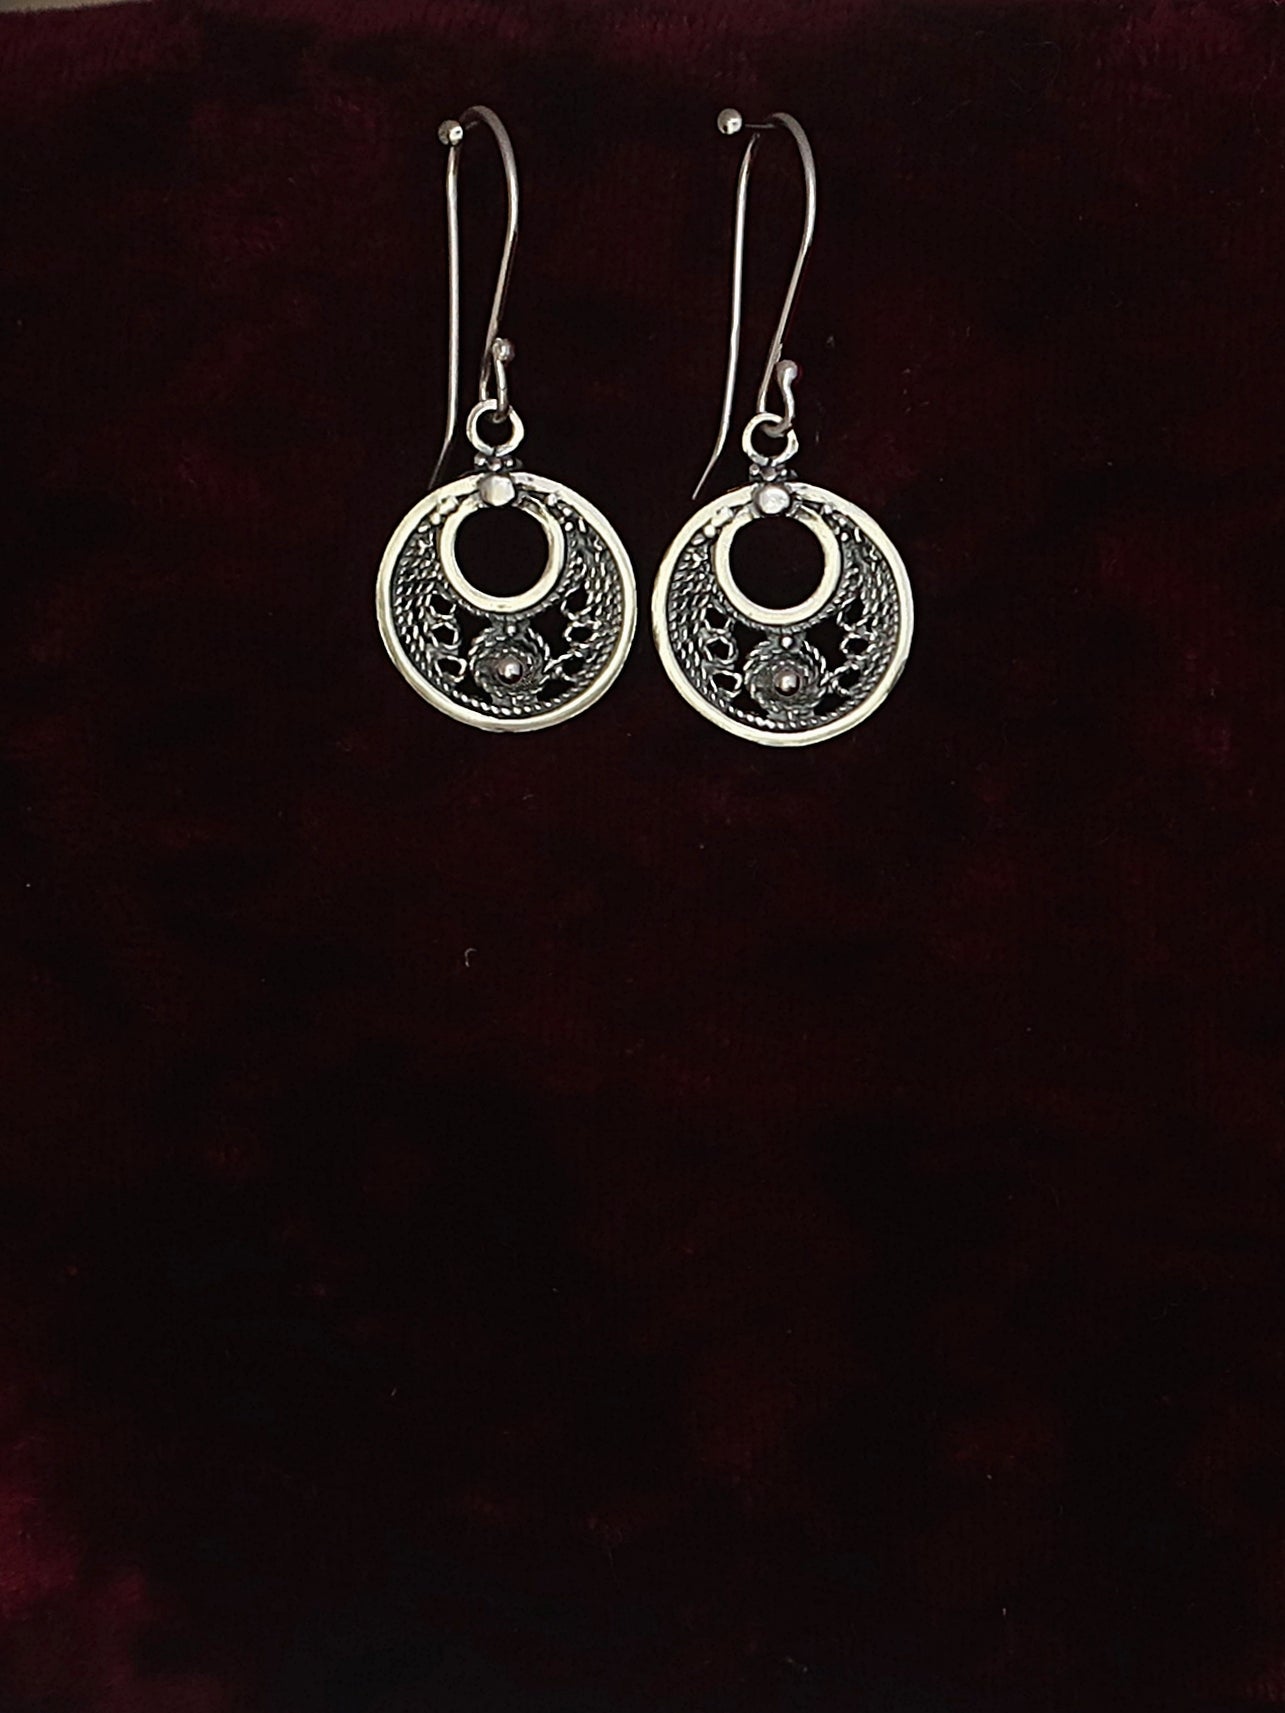 Silver Filigree Boho style chandelier earrings with Sterling Silver  earwires | eBay